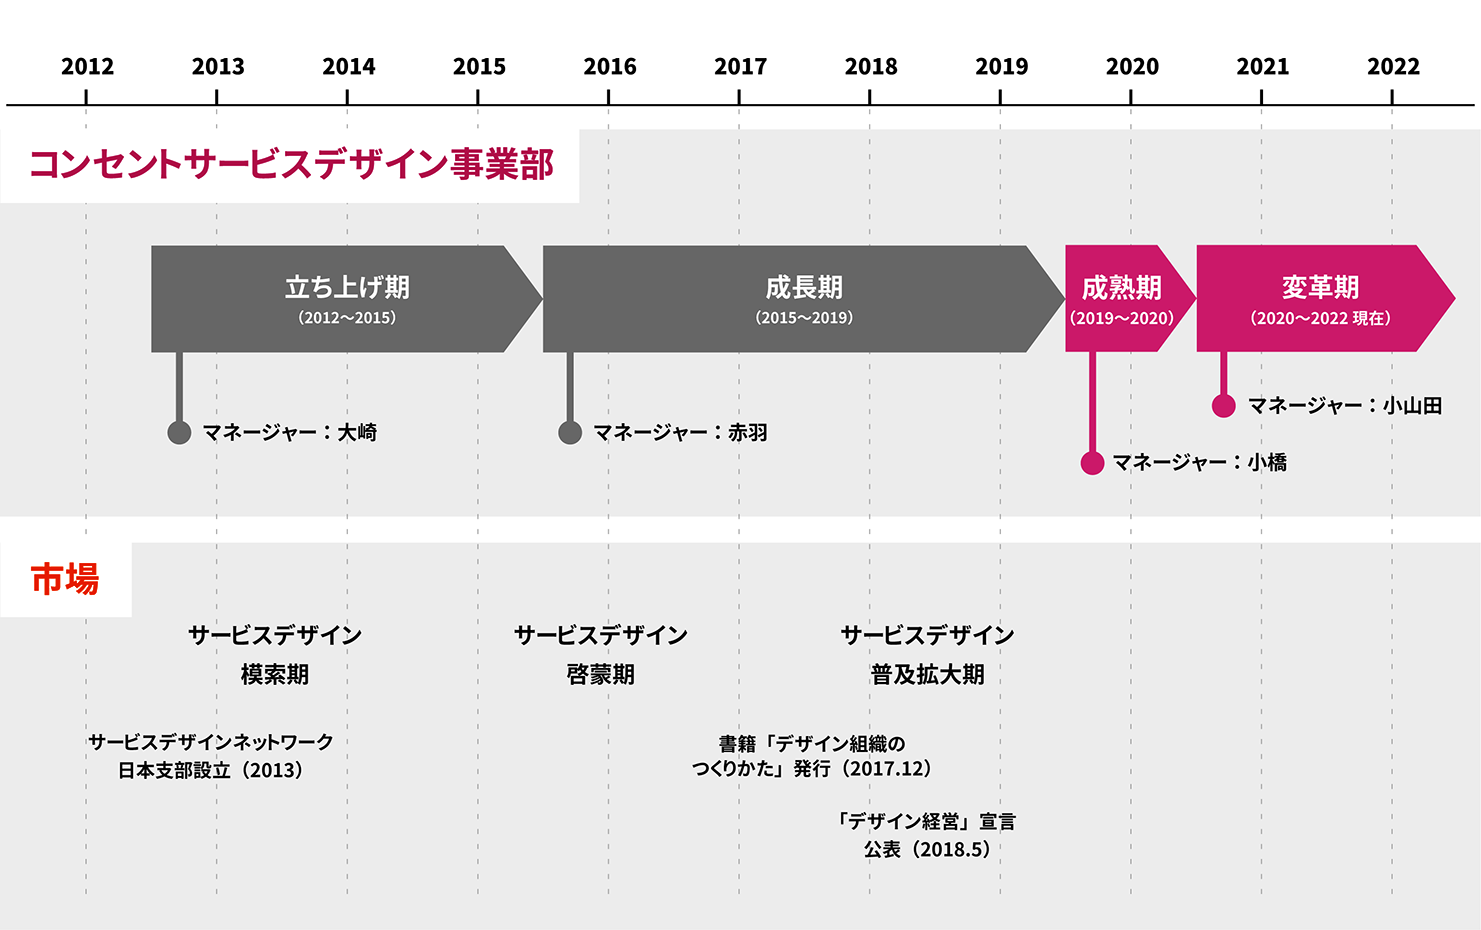 サービスデザイン市場の背景と、コンセントのサービスデザイン事業部の変遷図。コンセントの事業部変遷図では、2012年から2015年を立ち上げ期、2015年から2019年を成長期、2019年から2020年を成熟期、2020年から2022年を変革期としている。